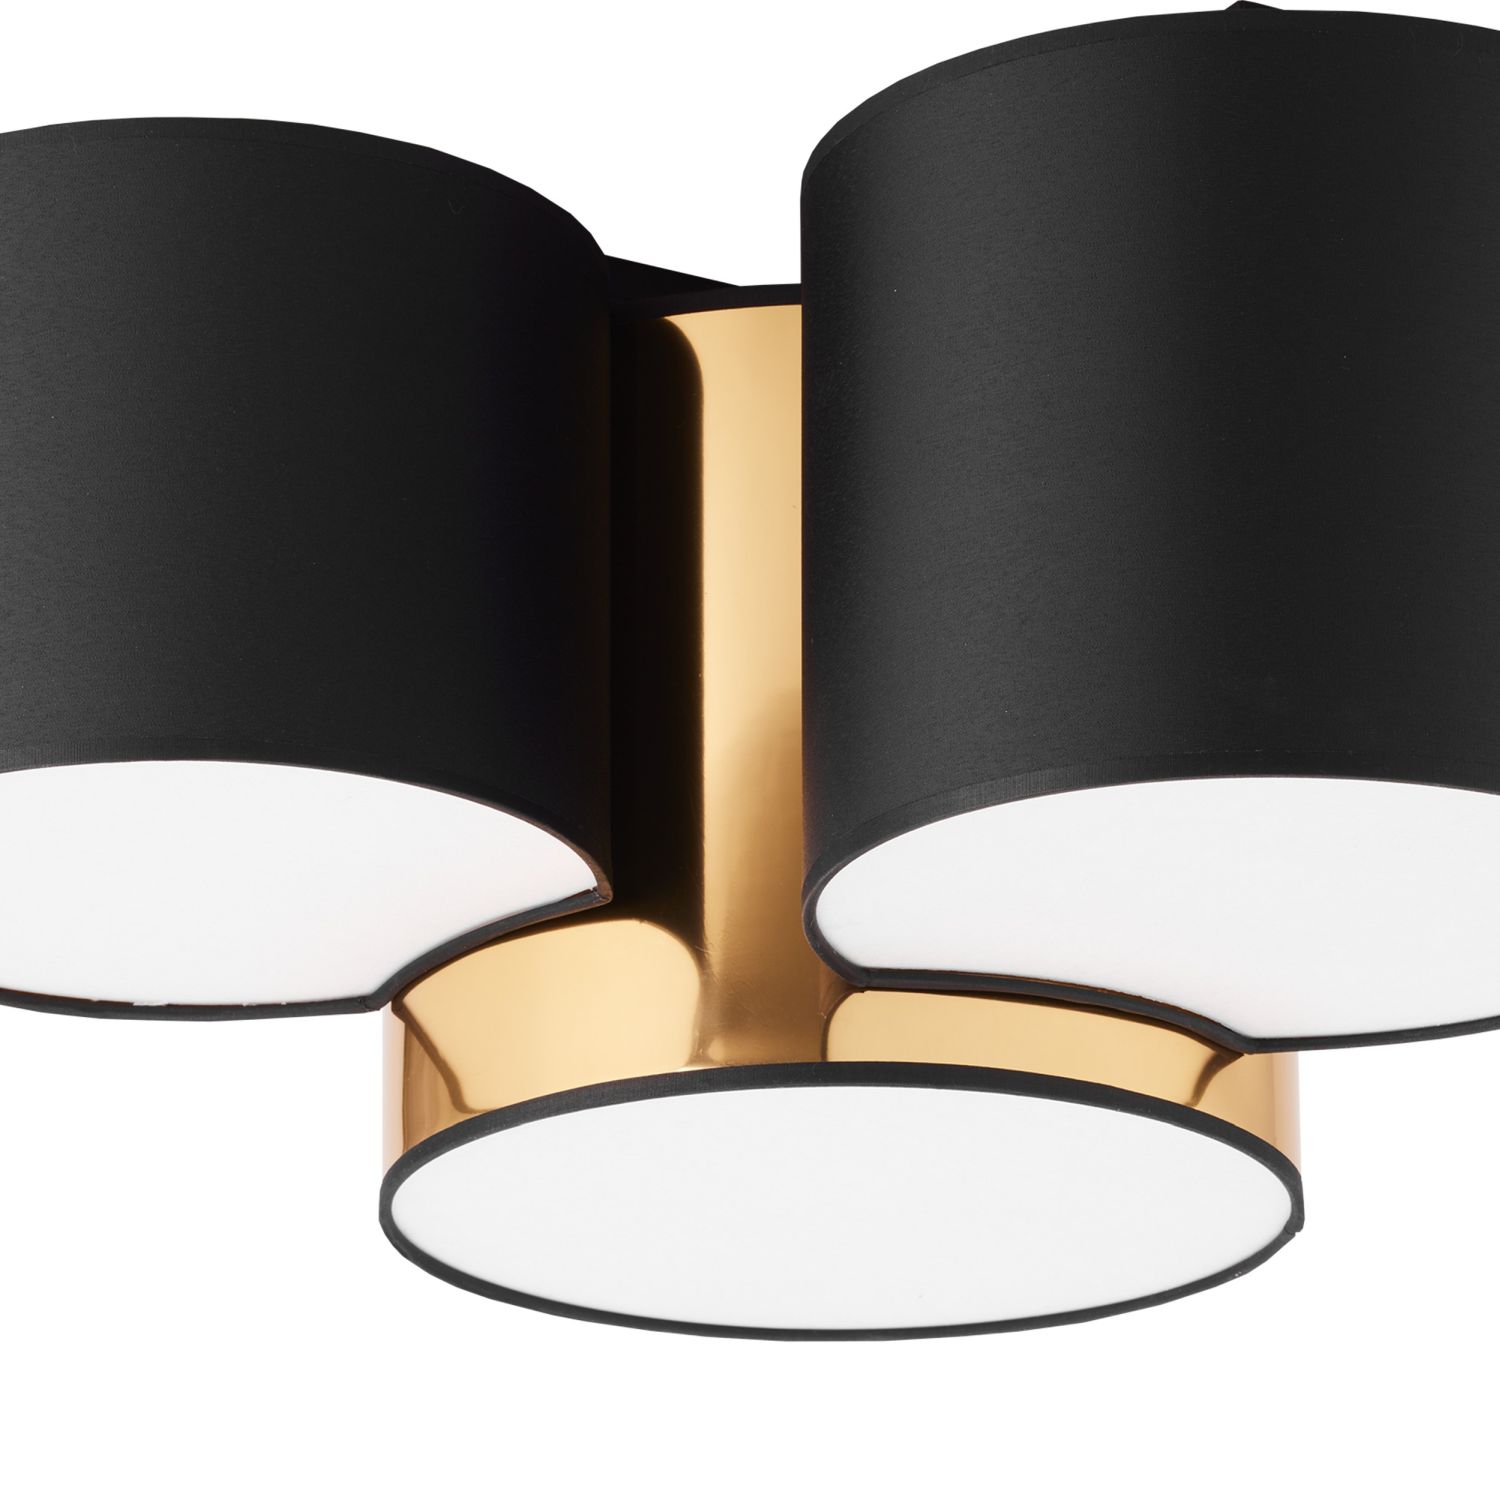 Deckenlampe Stoff Schwarz Gold blendarm E27 Wohnzimmer